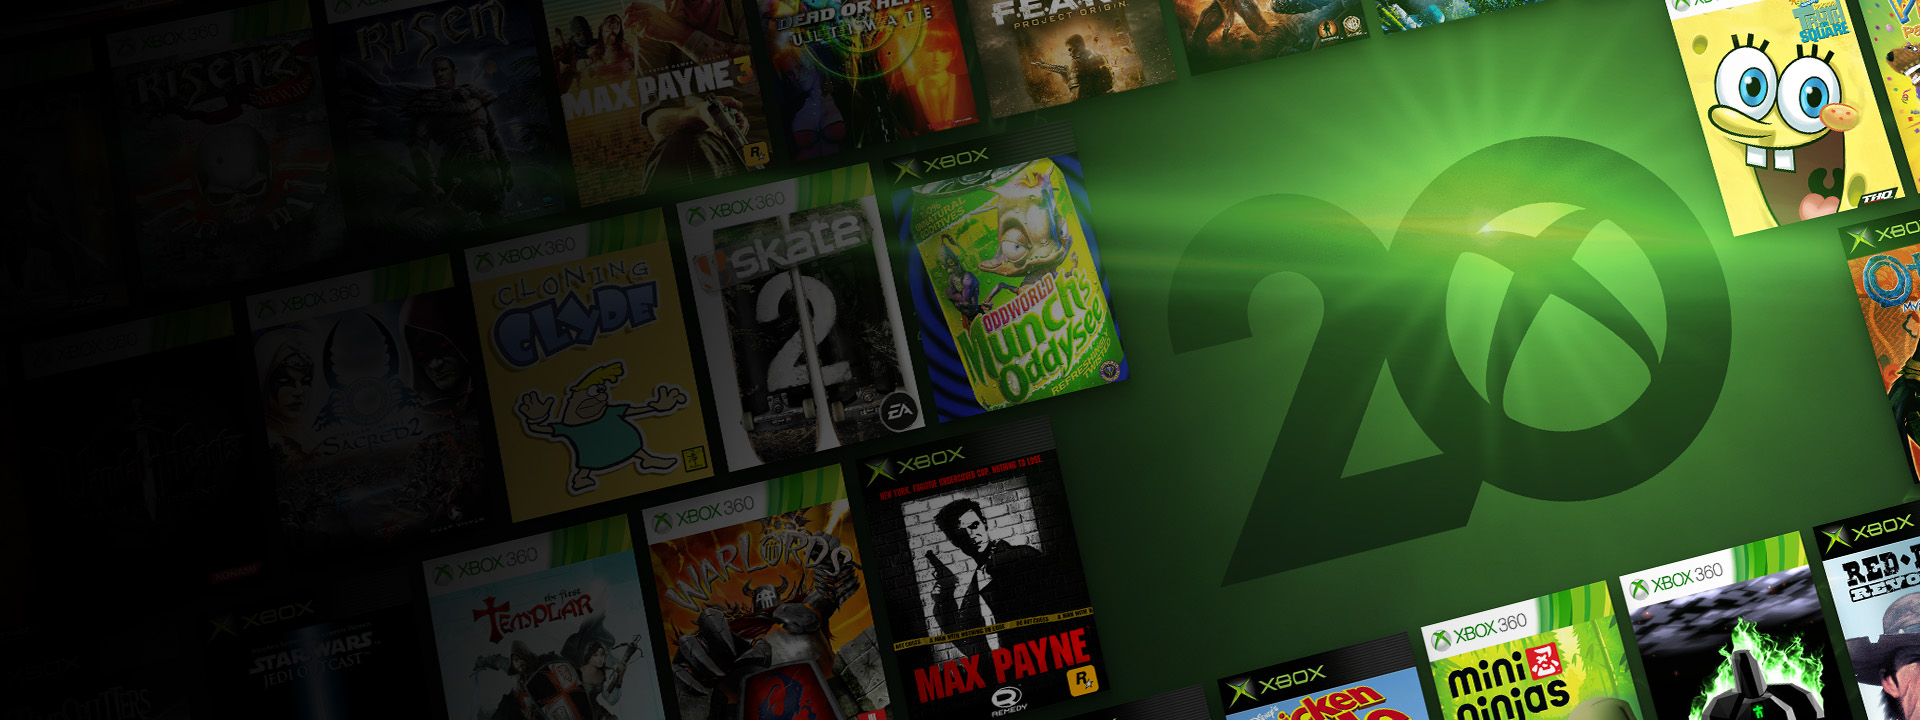 Xbox One-, Xbox 360- és eredeti Xbox-játékok dobozainak gyűjteménye